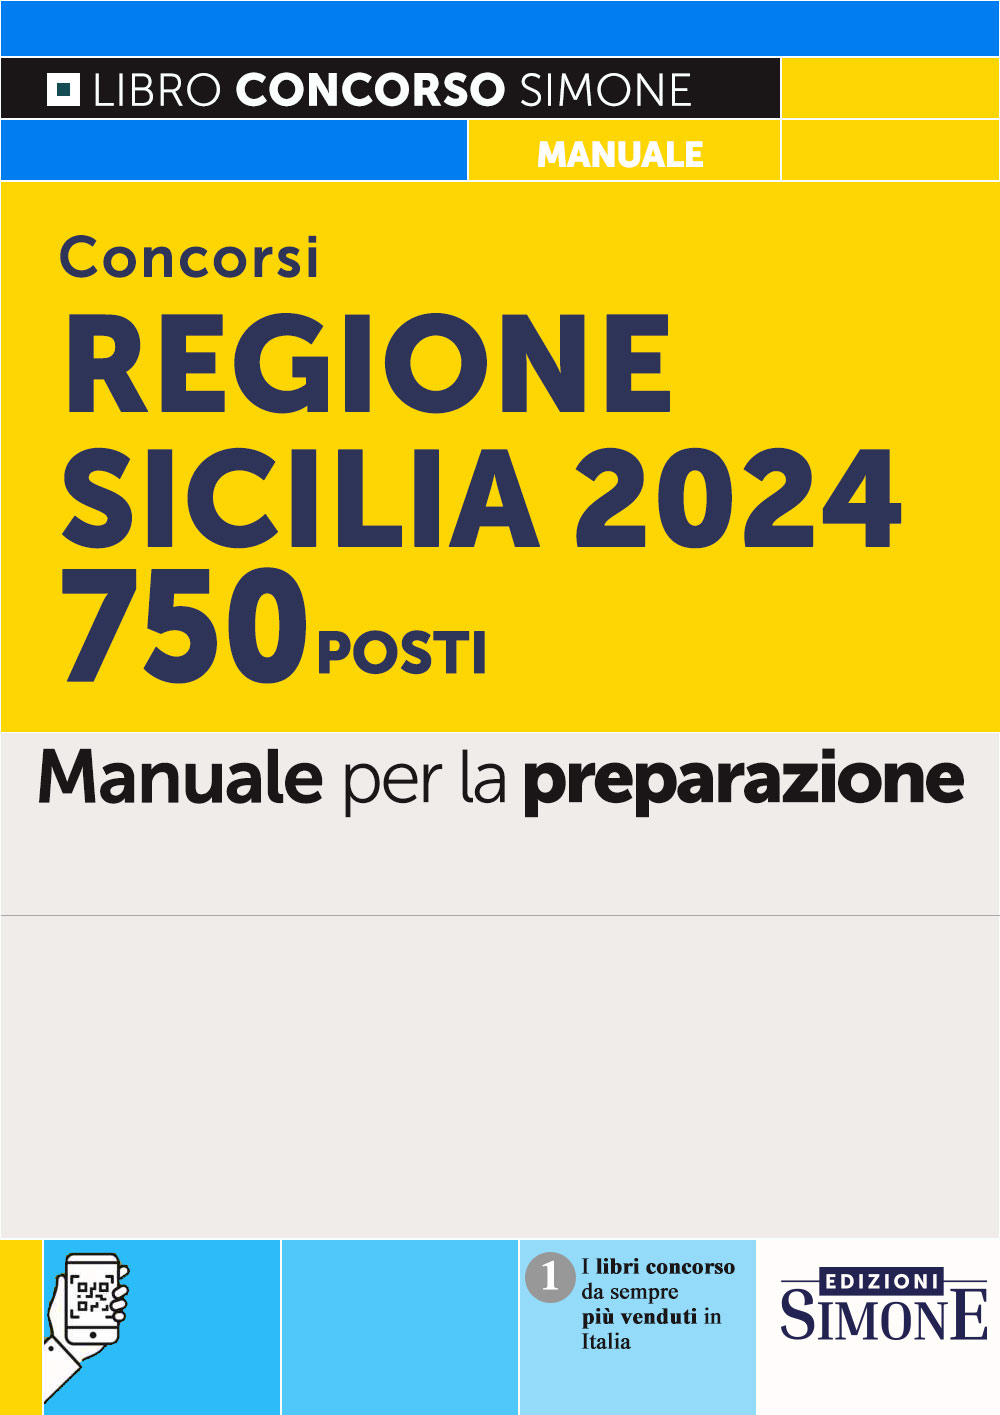 Concorsi Regione Sicilia 2024 - 750 posti - Simone Concorsi